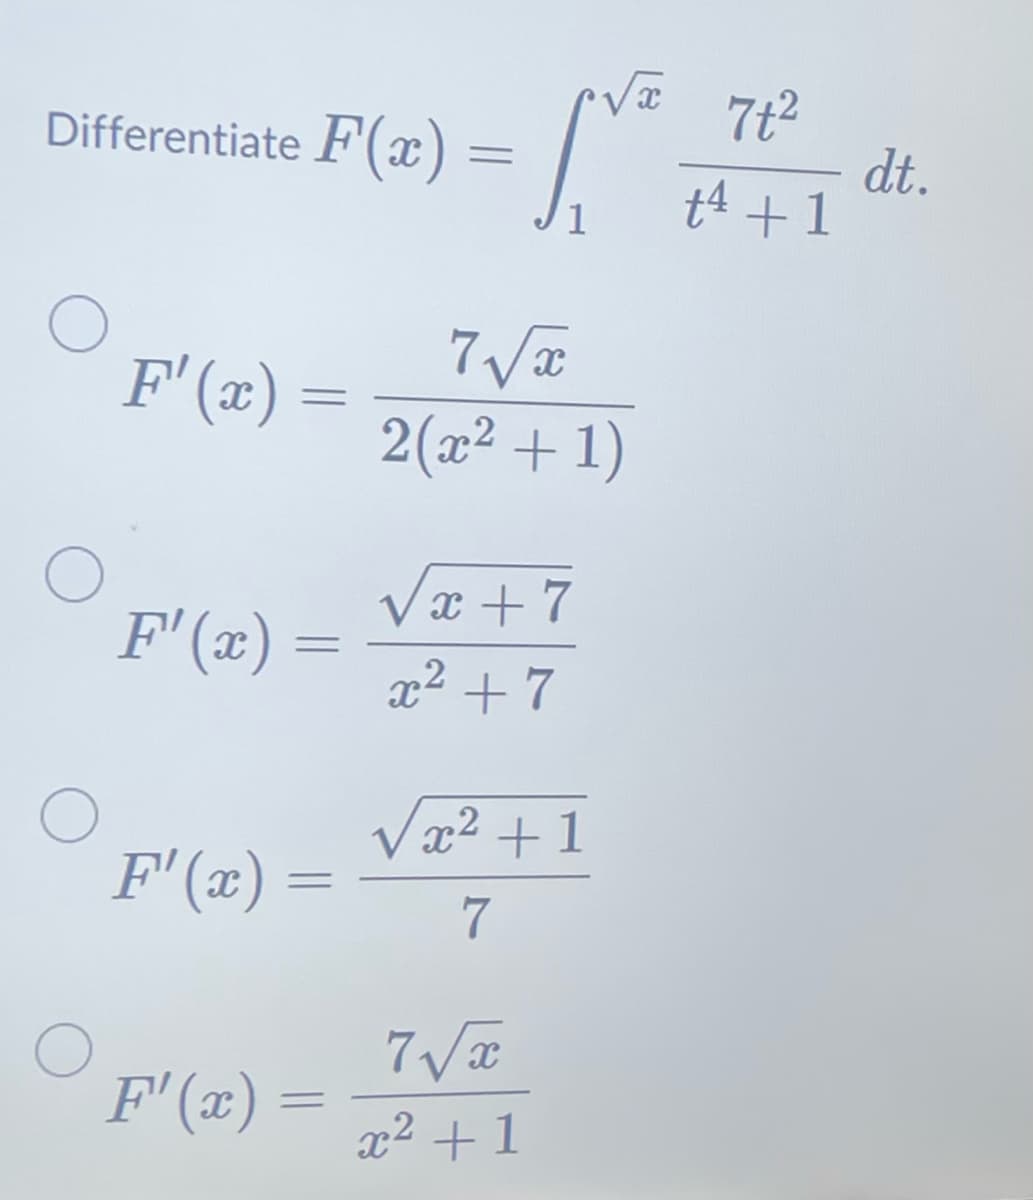 Differentiate F(x)=
F'(x) =
F'(x)
=
F'(x) =
F'(x)
=
=
[V²
7t²
- dt.
+4 +1
1
7√x
2(x² + 1)
√x+7
x² +7
x² +1
7
7√x
x² +1